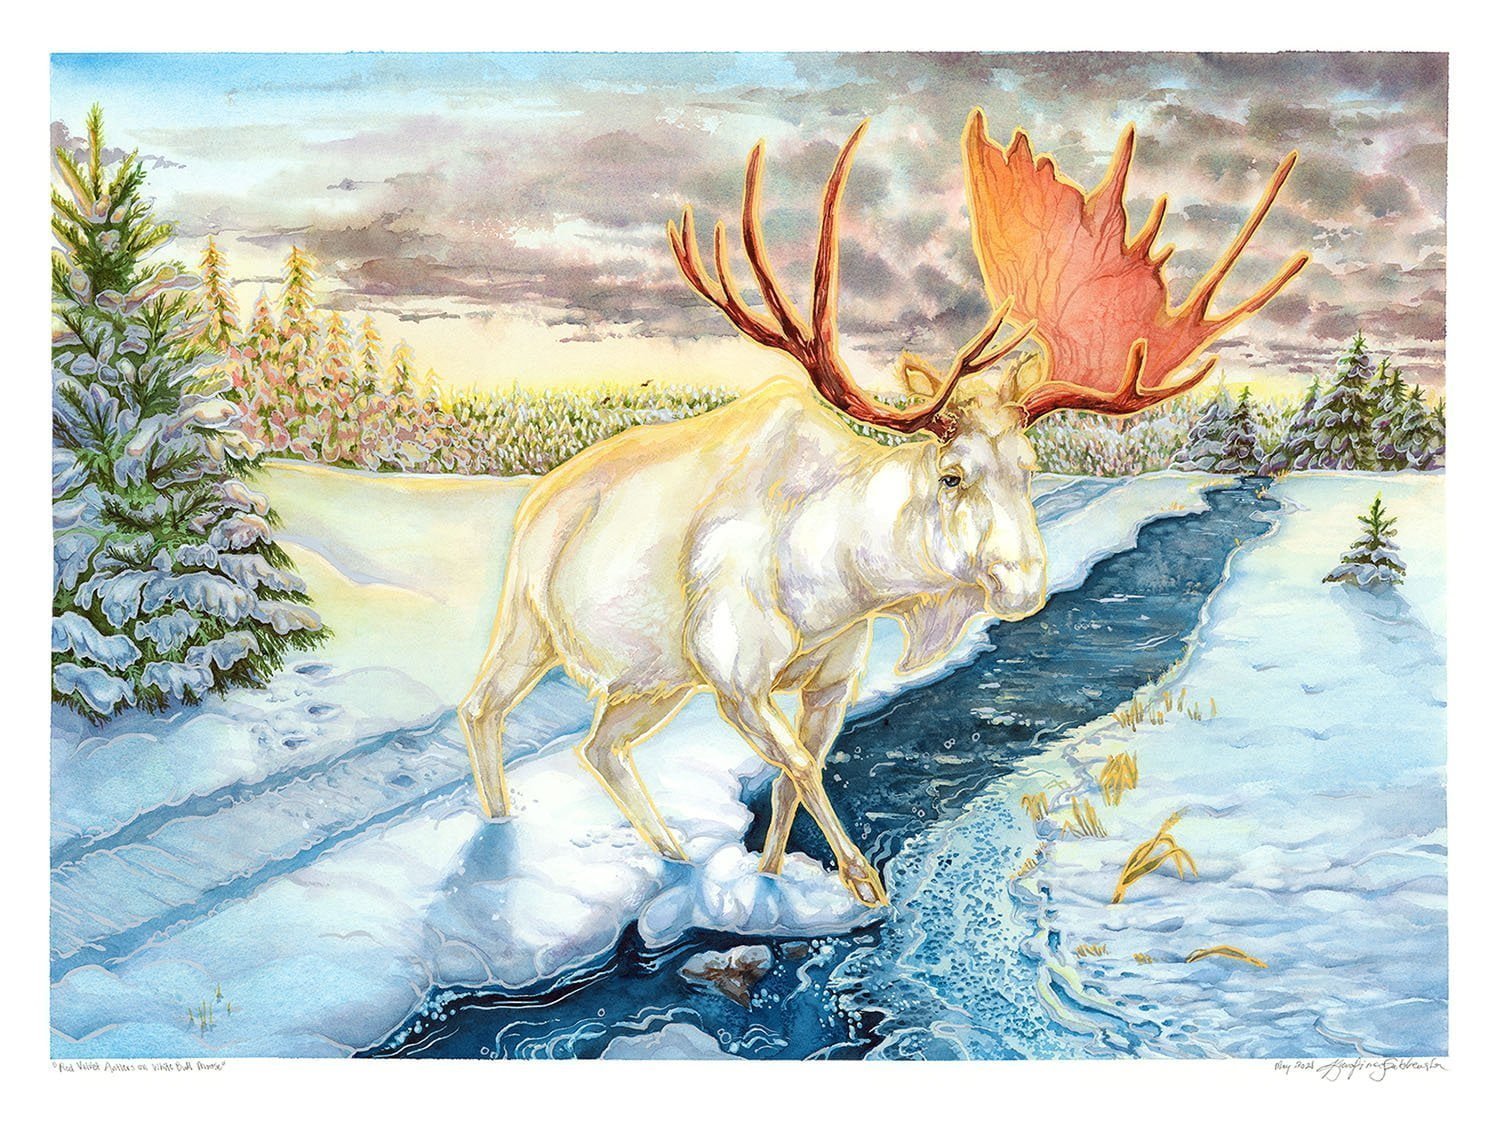 Red Velvet Antlers on Bull Moose watercolor painting by karolina szablewska